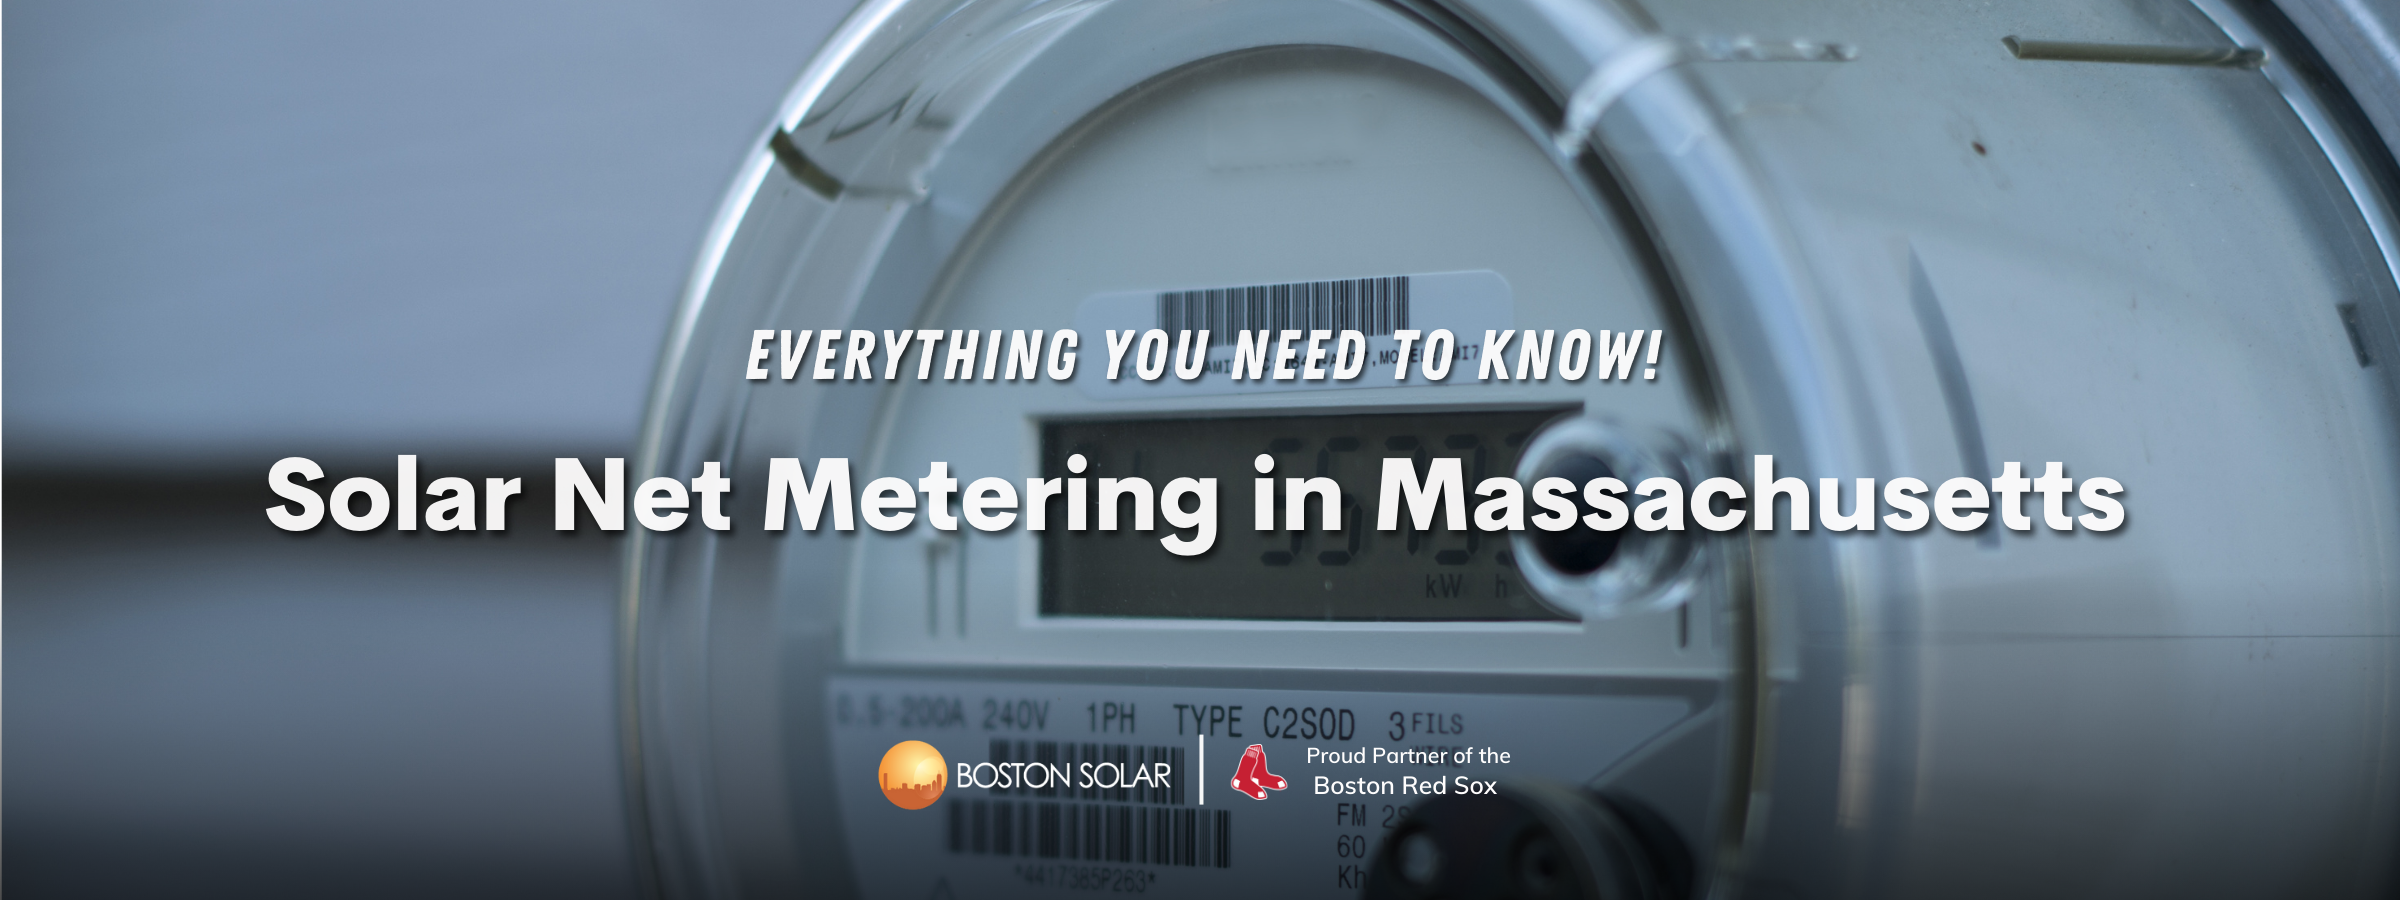 Solar Net Metering in Massachusetts